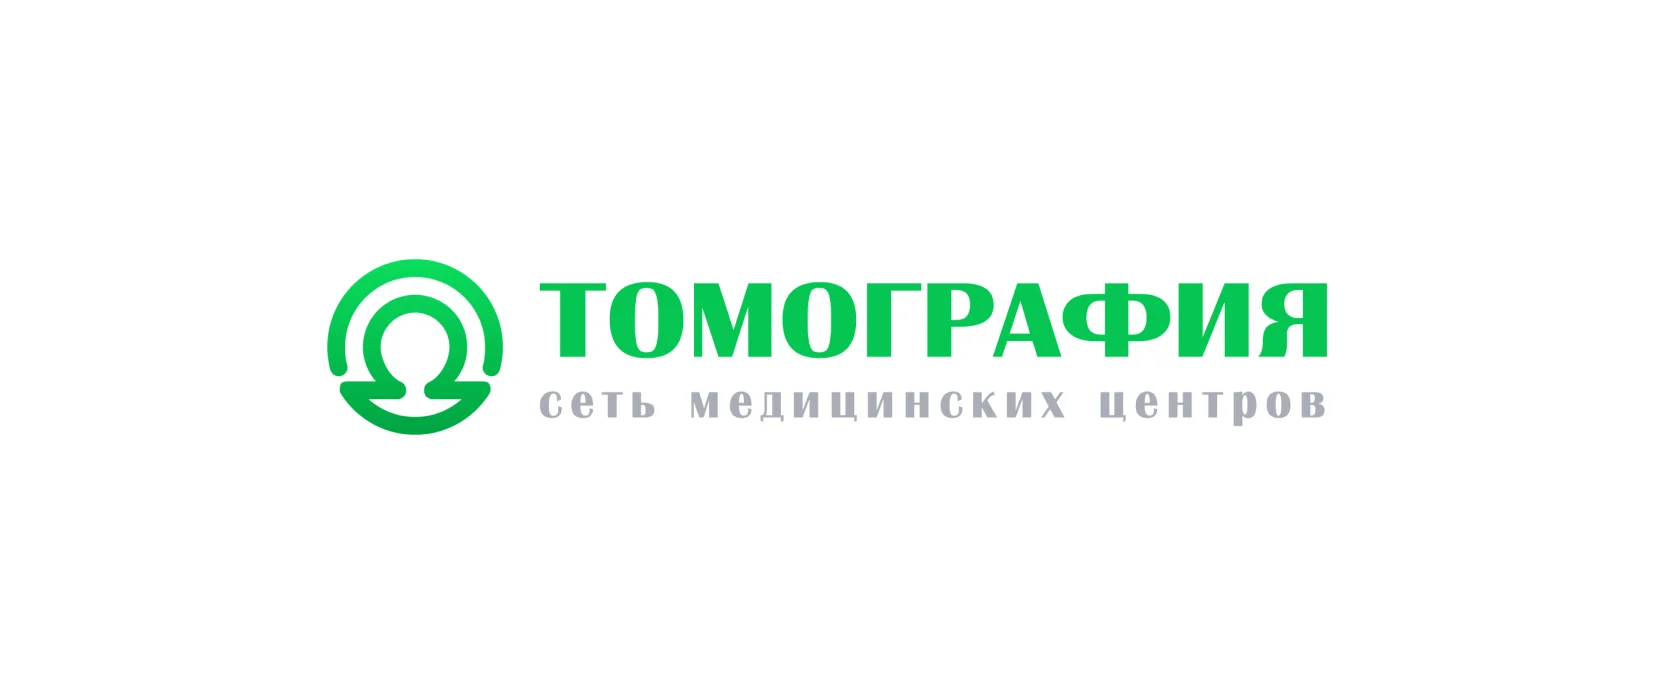 ТОМОГРАФИЯ - сеть медицинских центров